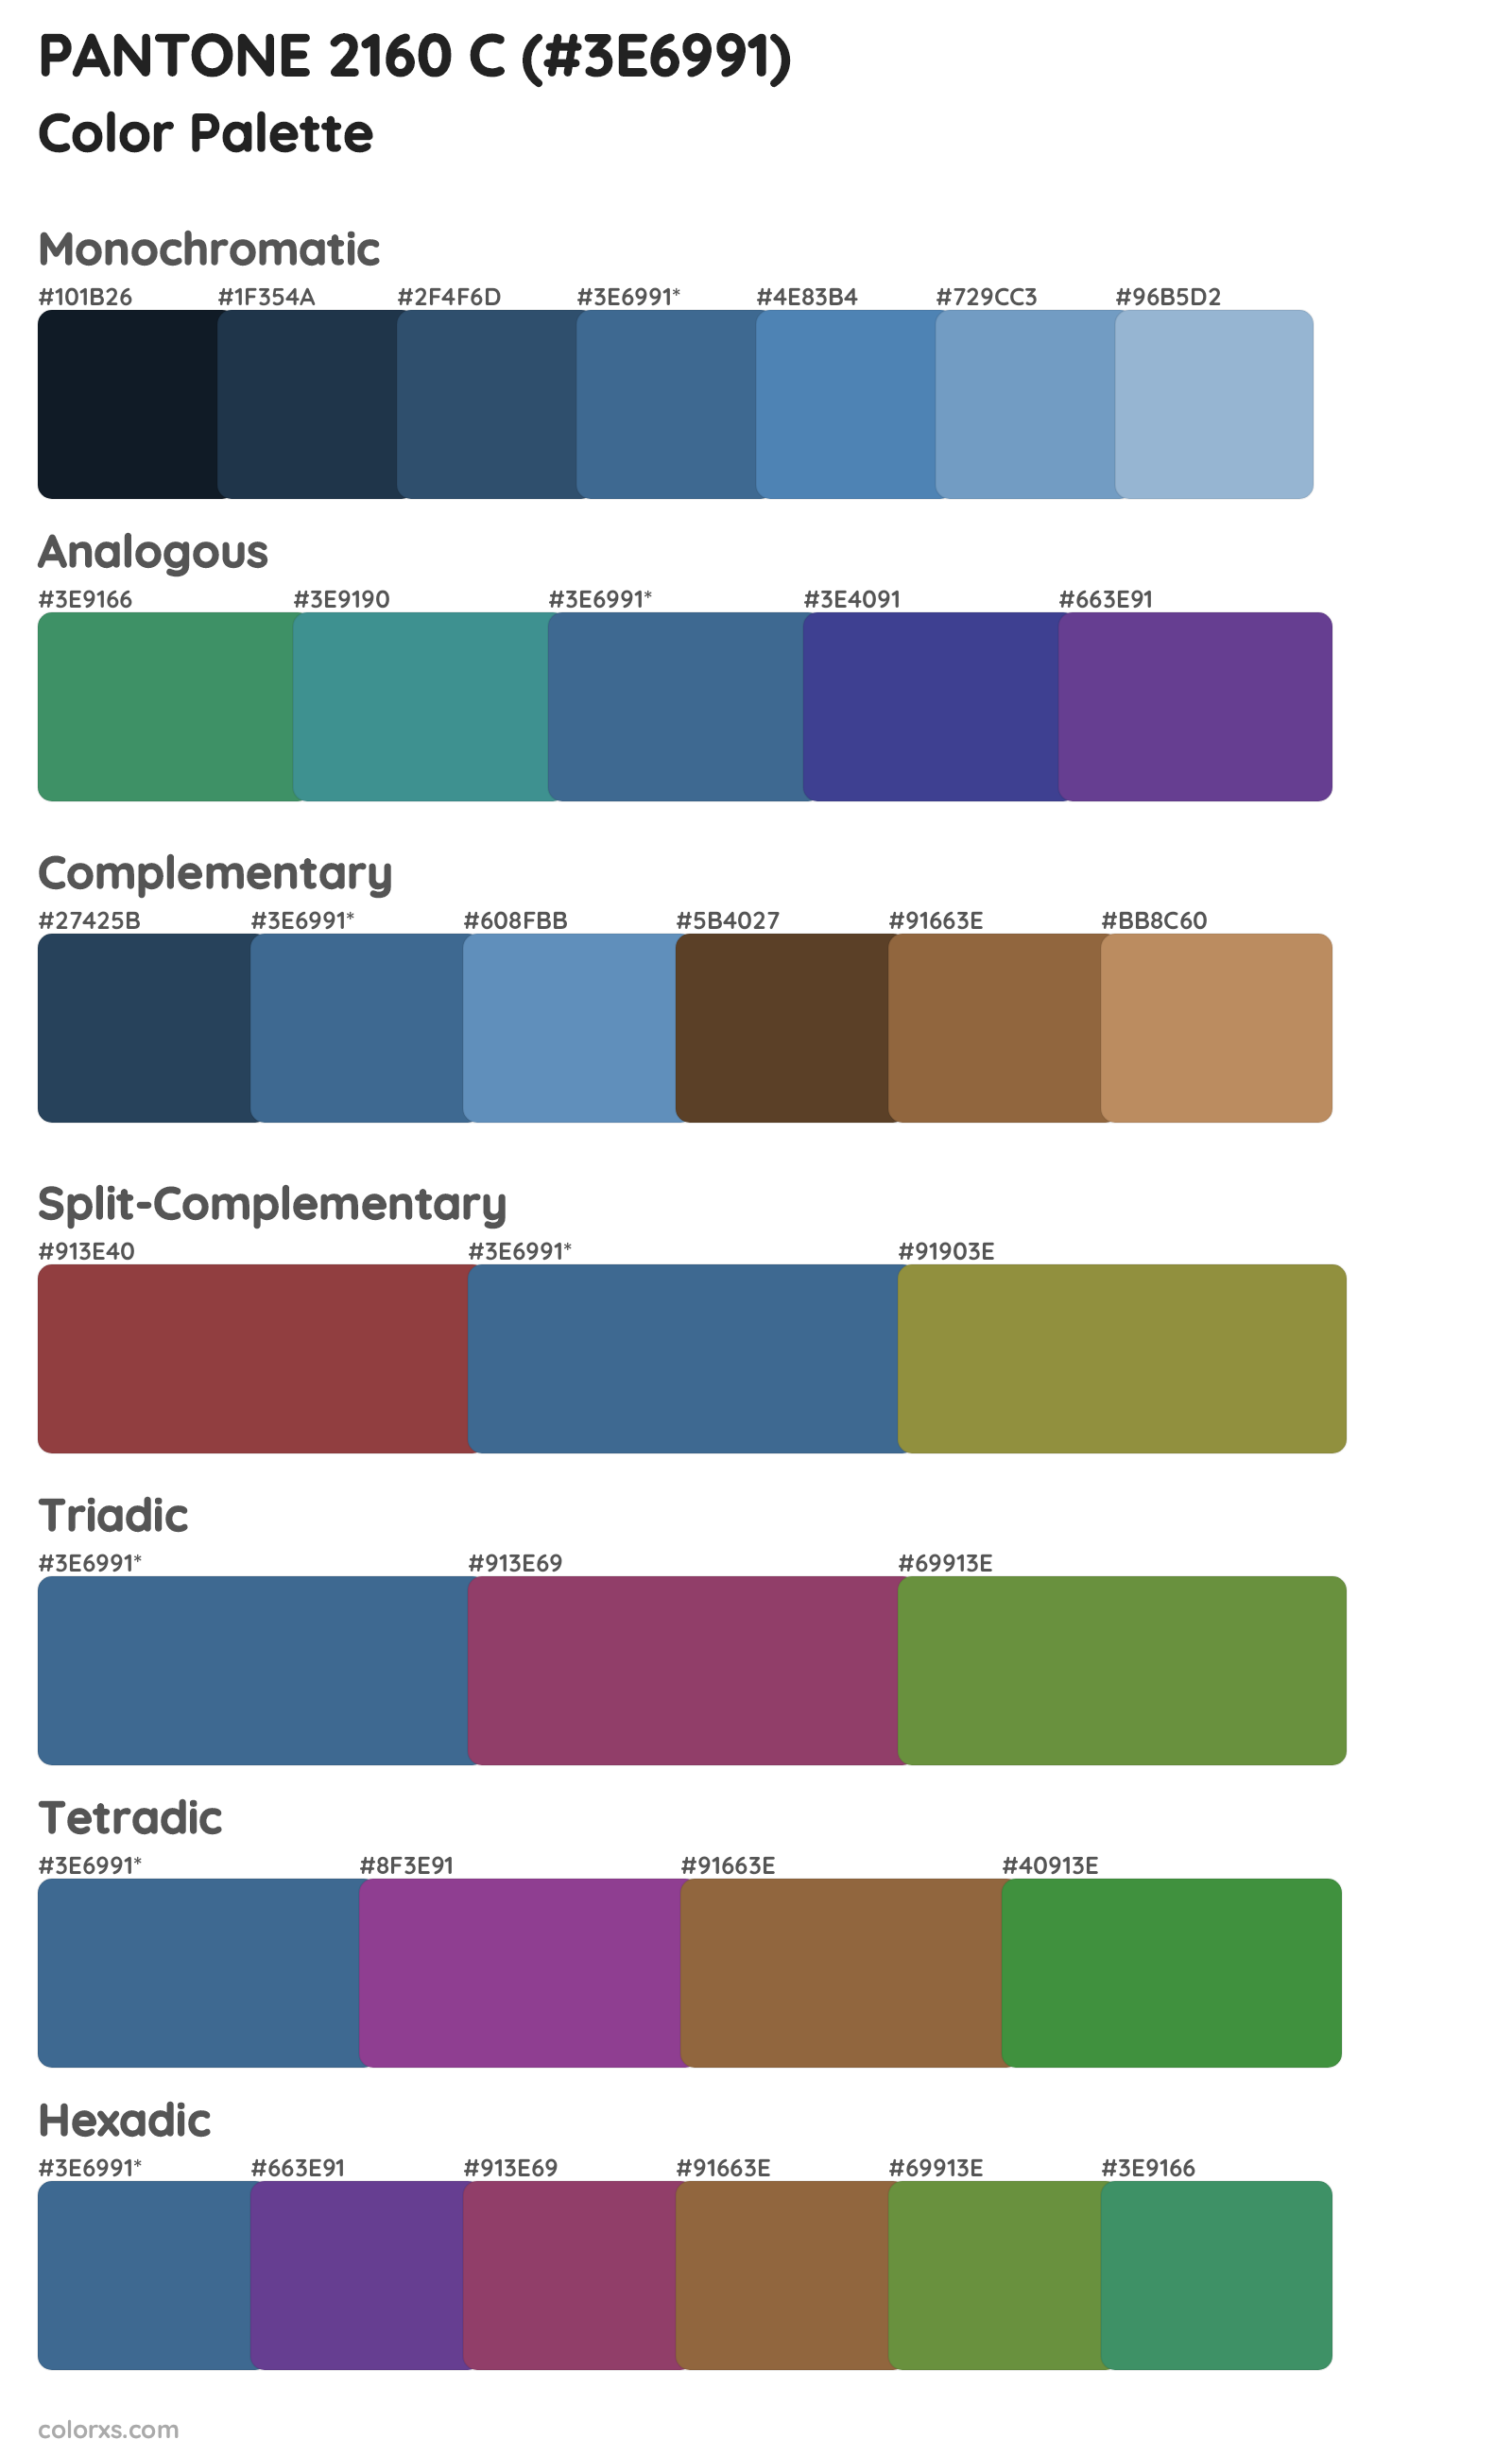 PANTONE 2160 C Color Scheme Palettes